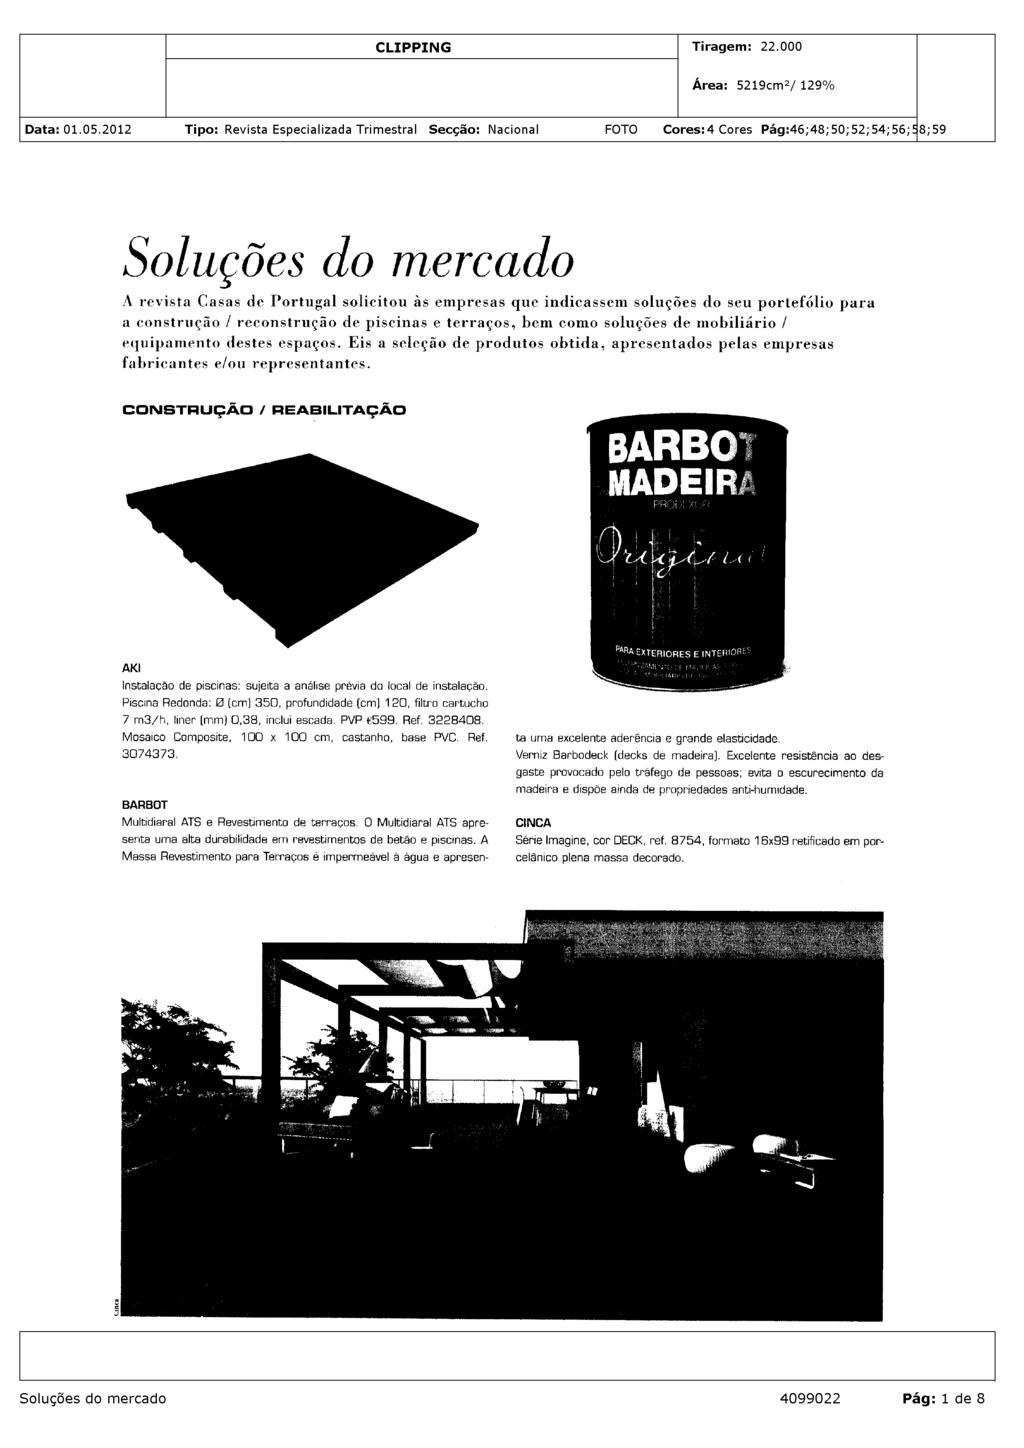 Soluções do mercado A revista Casas de Portugal solicitou às empresas que indicassem soluções do seu portefólio para a construção / reconstrução de piscinas e terraços, bem como soluções de